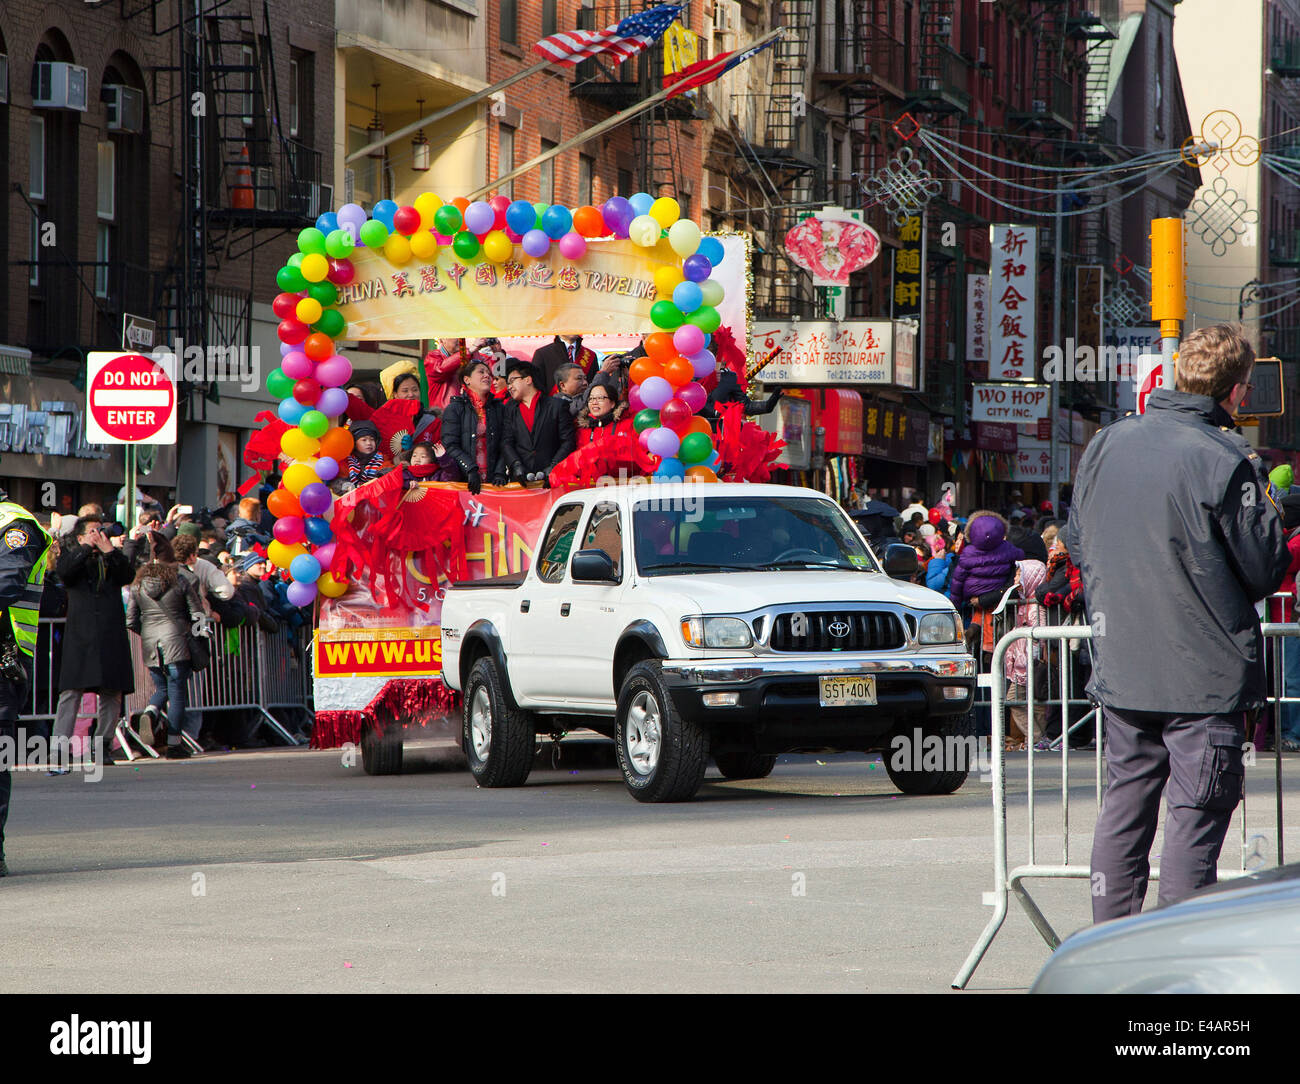 NEW YORK, NEW YORK - 17 février : défilé du Nouvel An chinois au cours de la célébration qui a eu lieu dans le quartier chinois. Prises le 17 février 2013 à New York. Banque D'Images